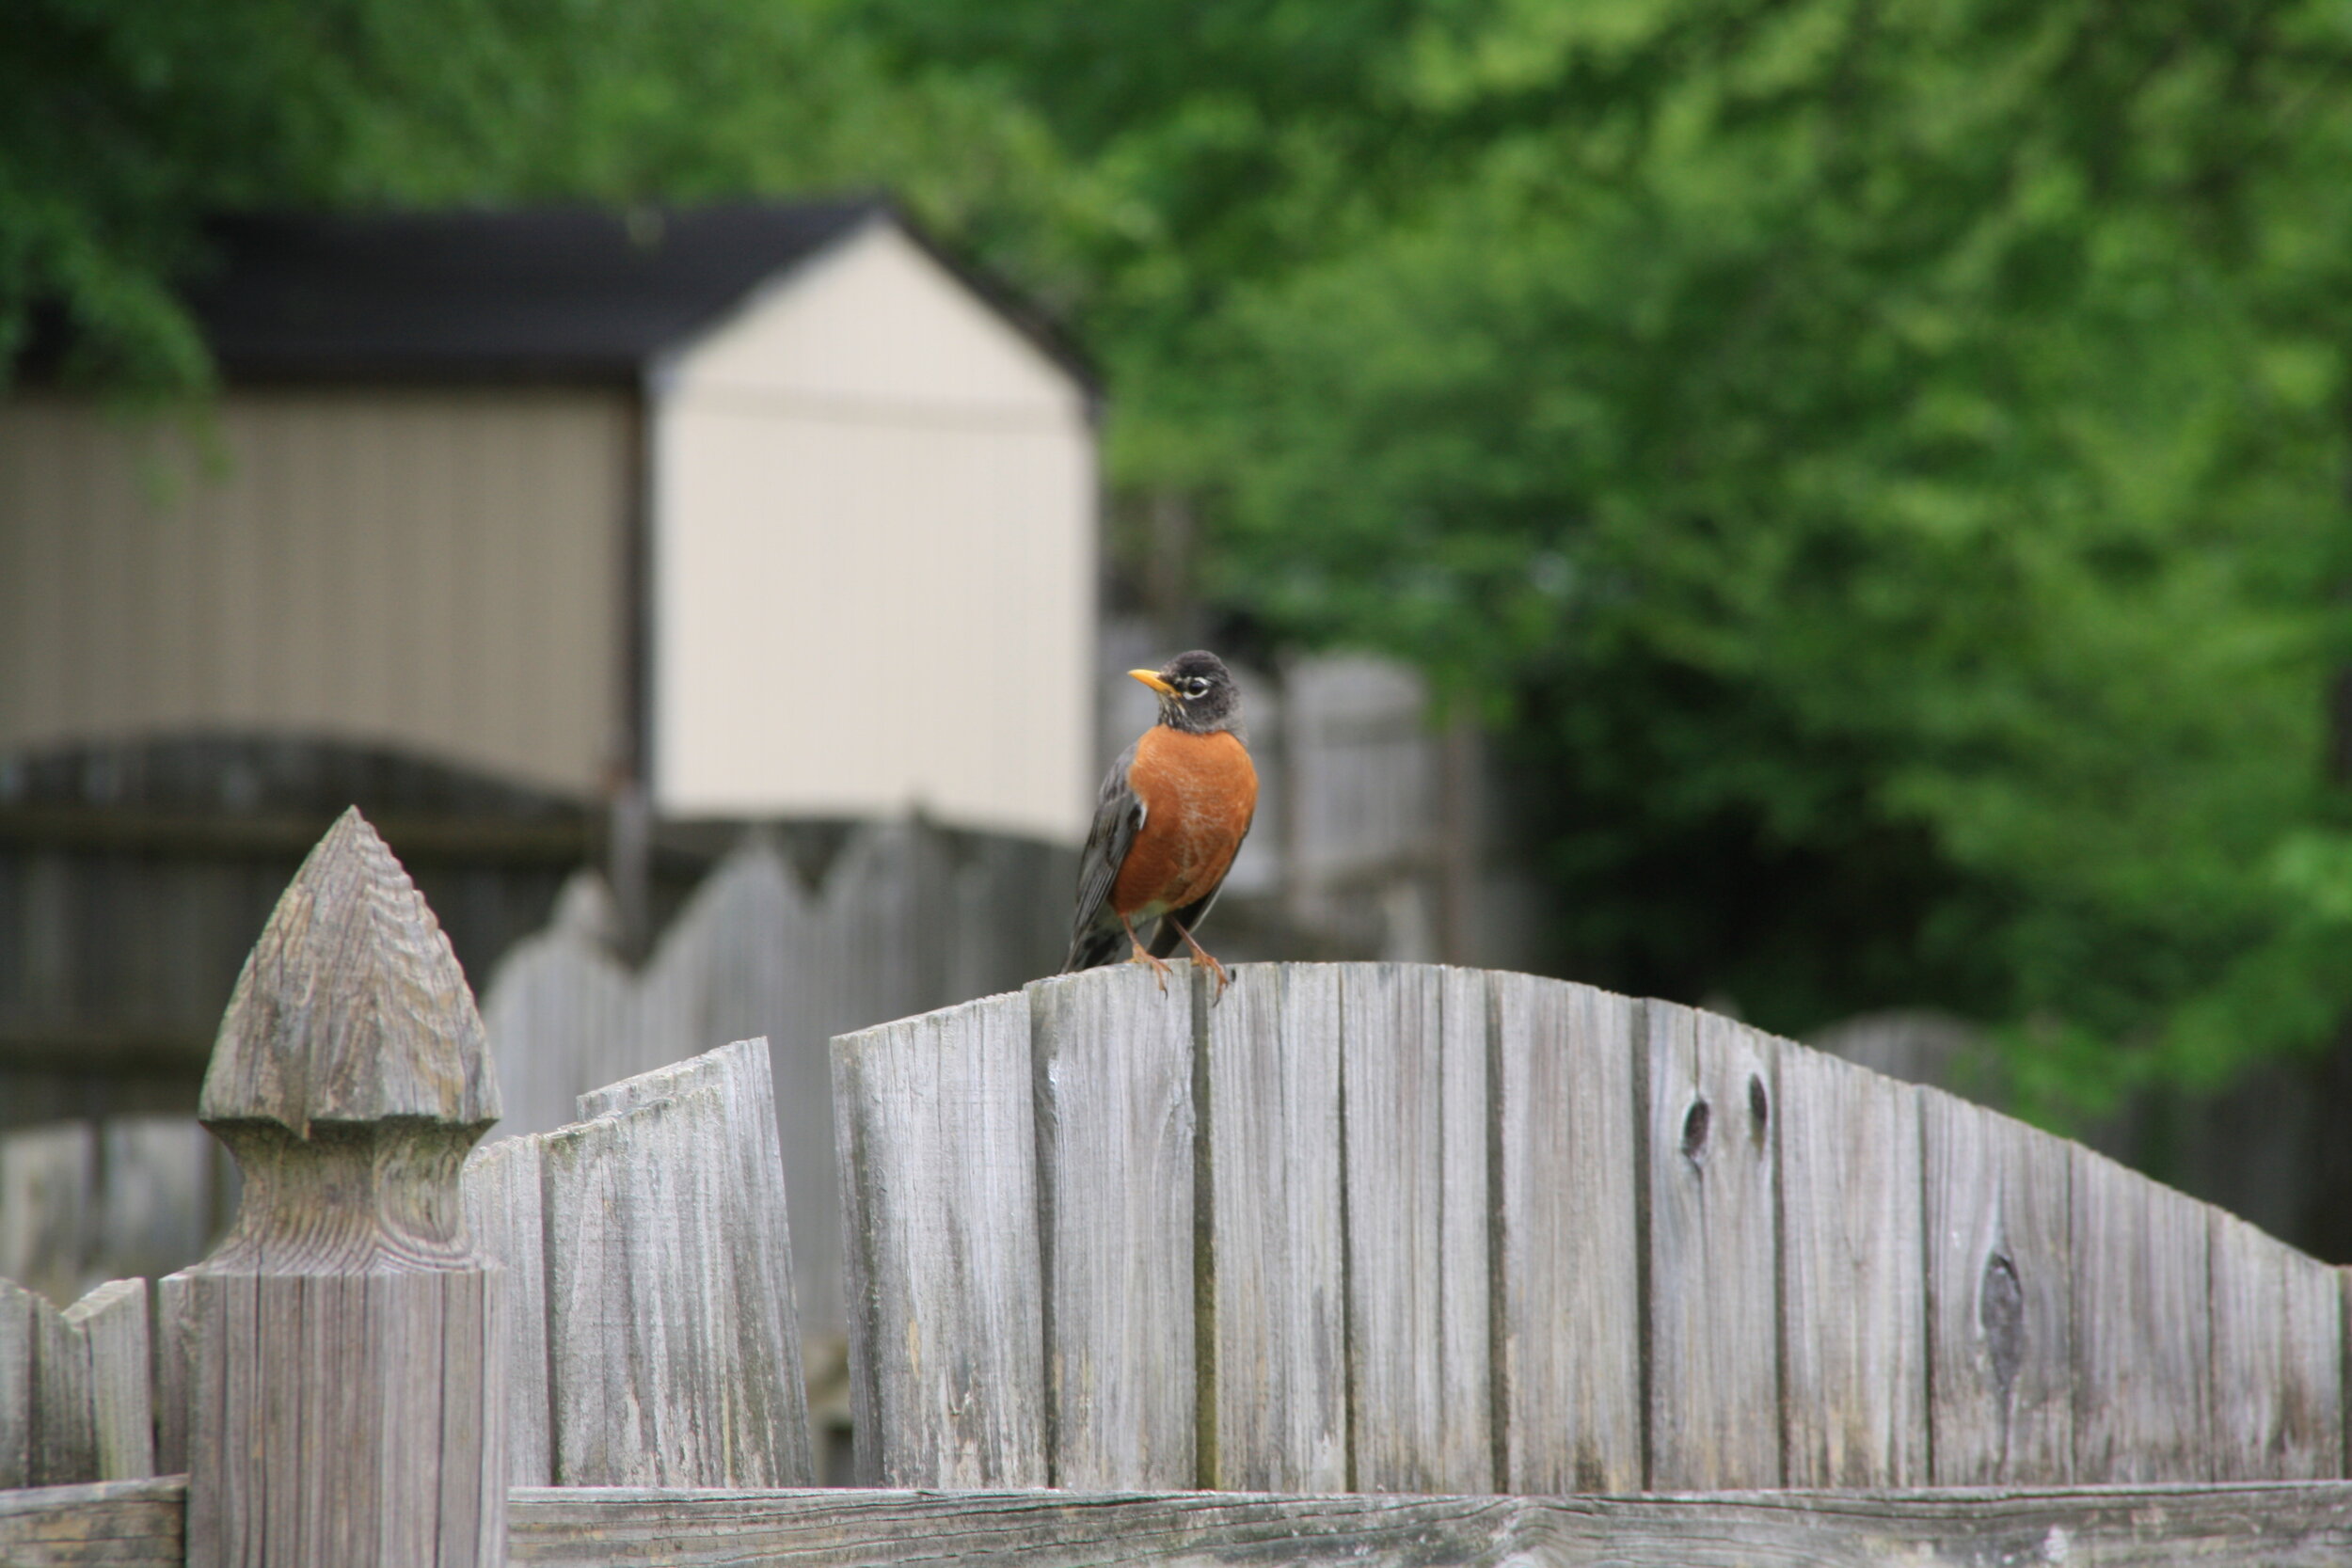 I spy a little robin on watch.  